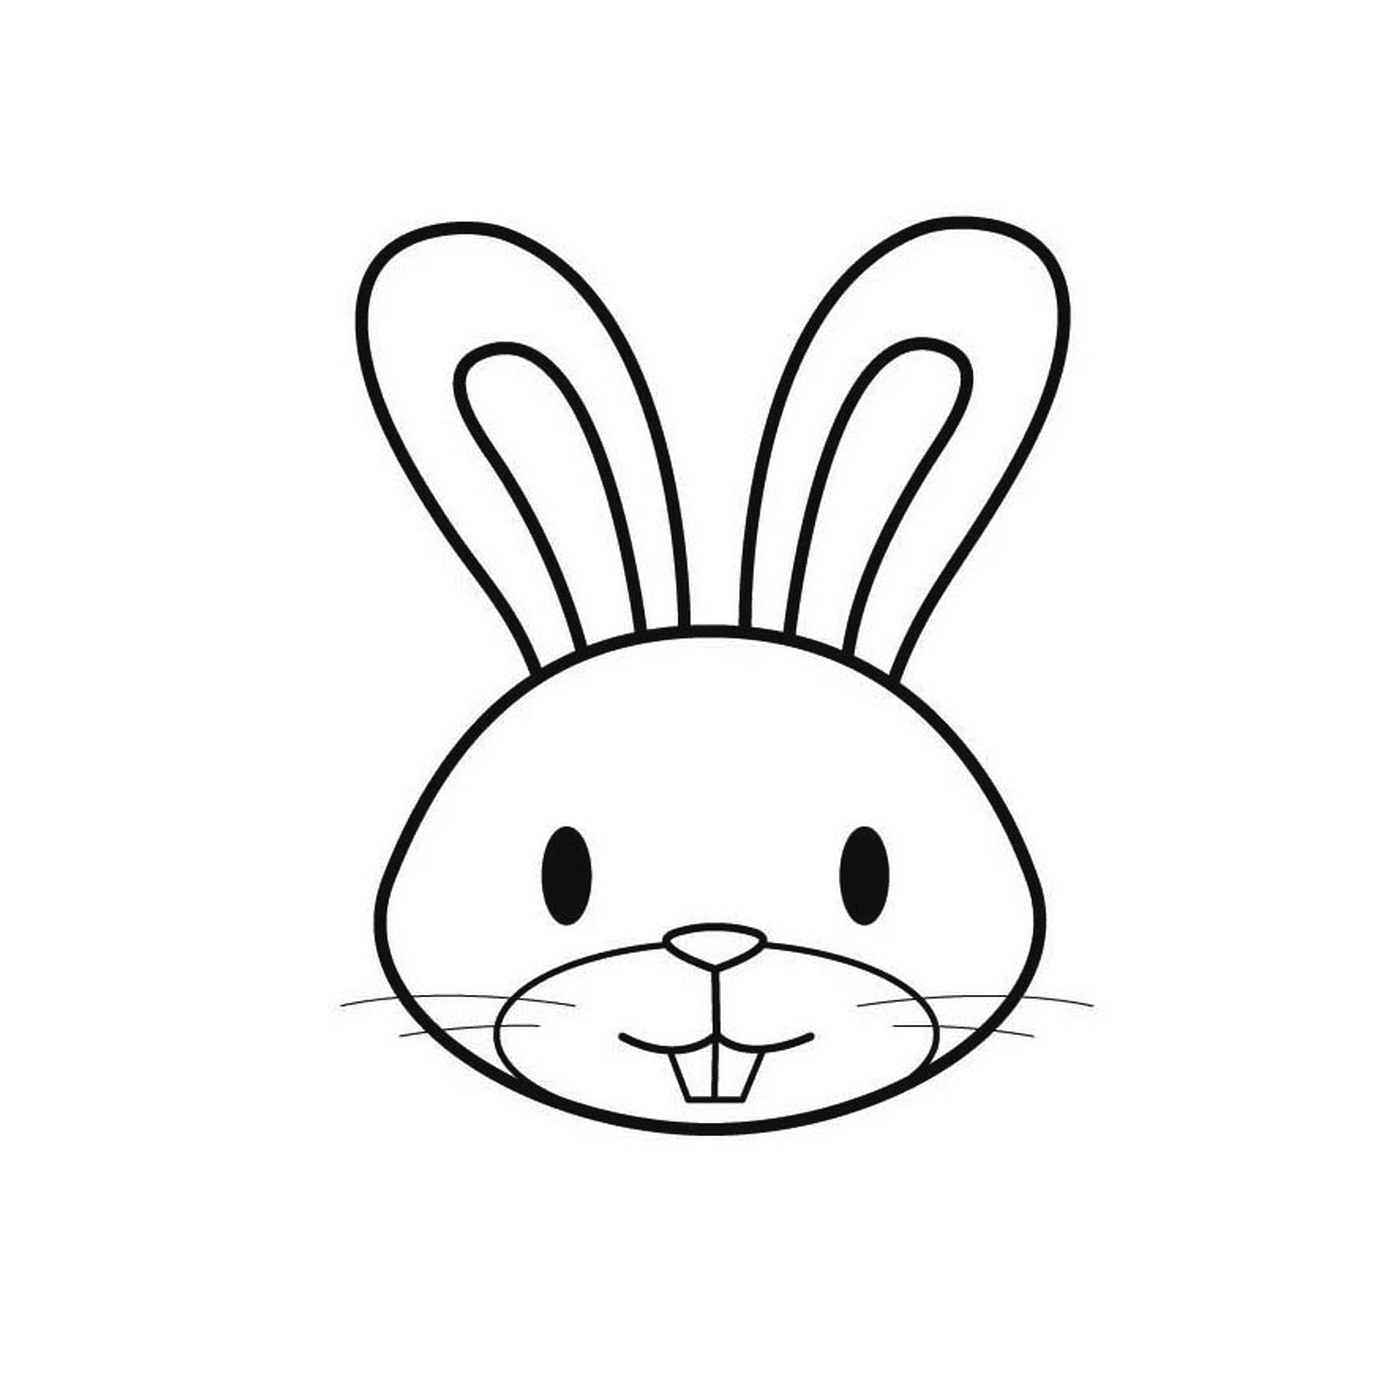  La cara de un conejo 